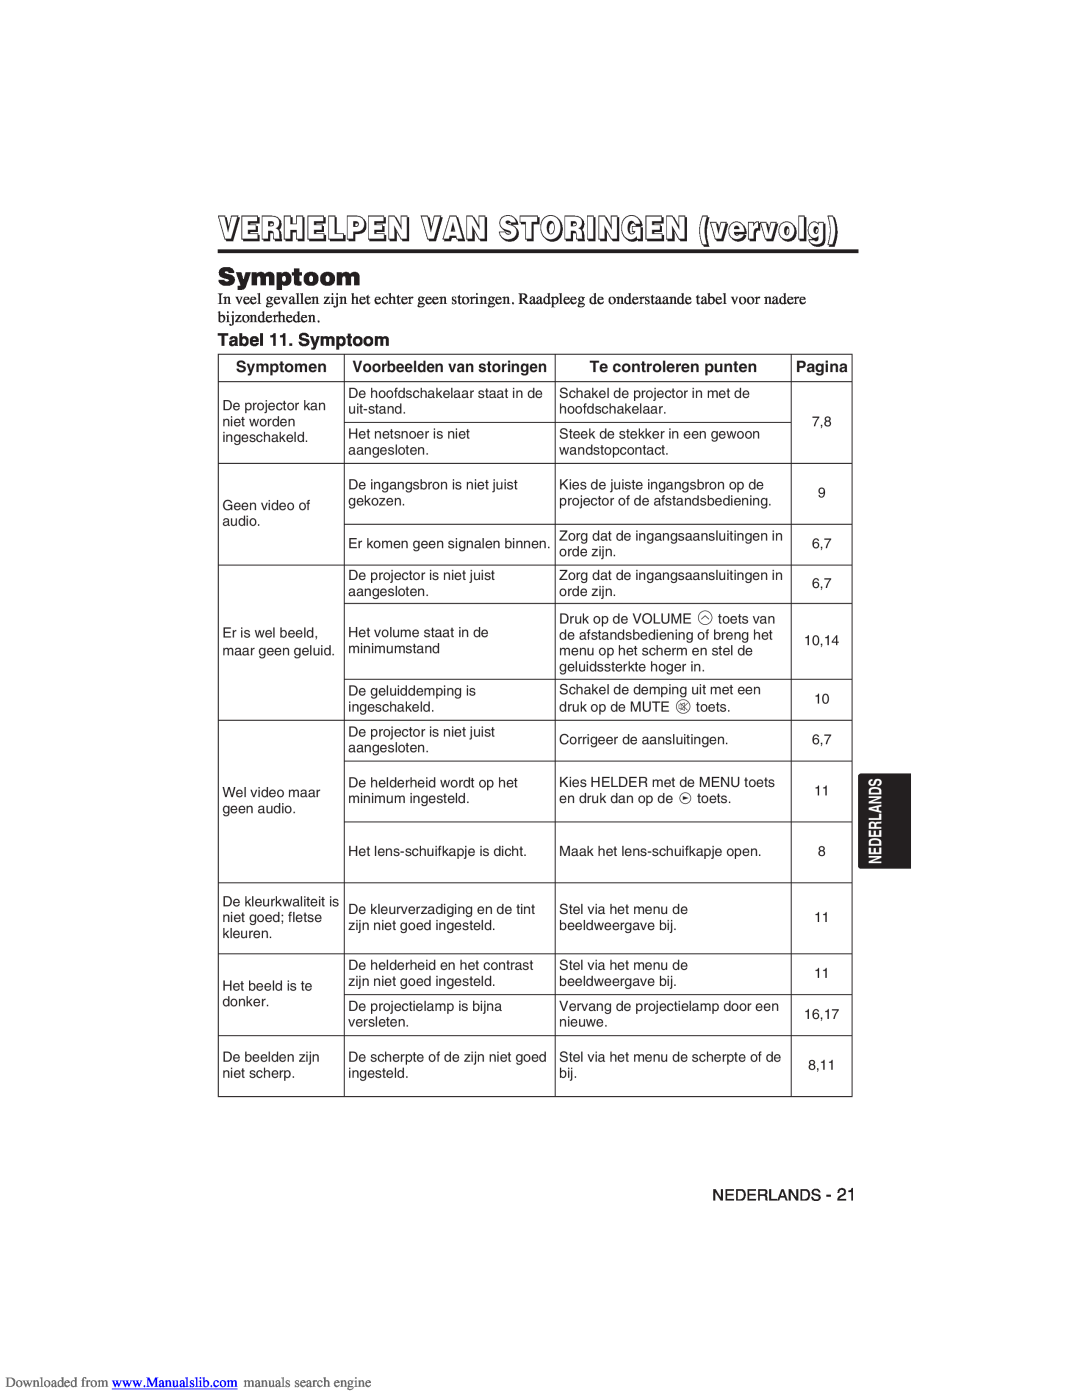 Hitachi CP-X275W user manual Tabel 11. Symptoom, VERHELPEN VAN STORINGEN vervolg 